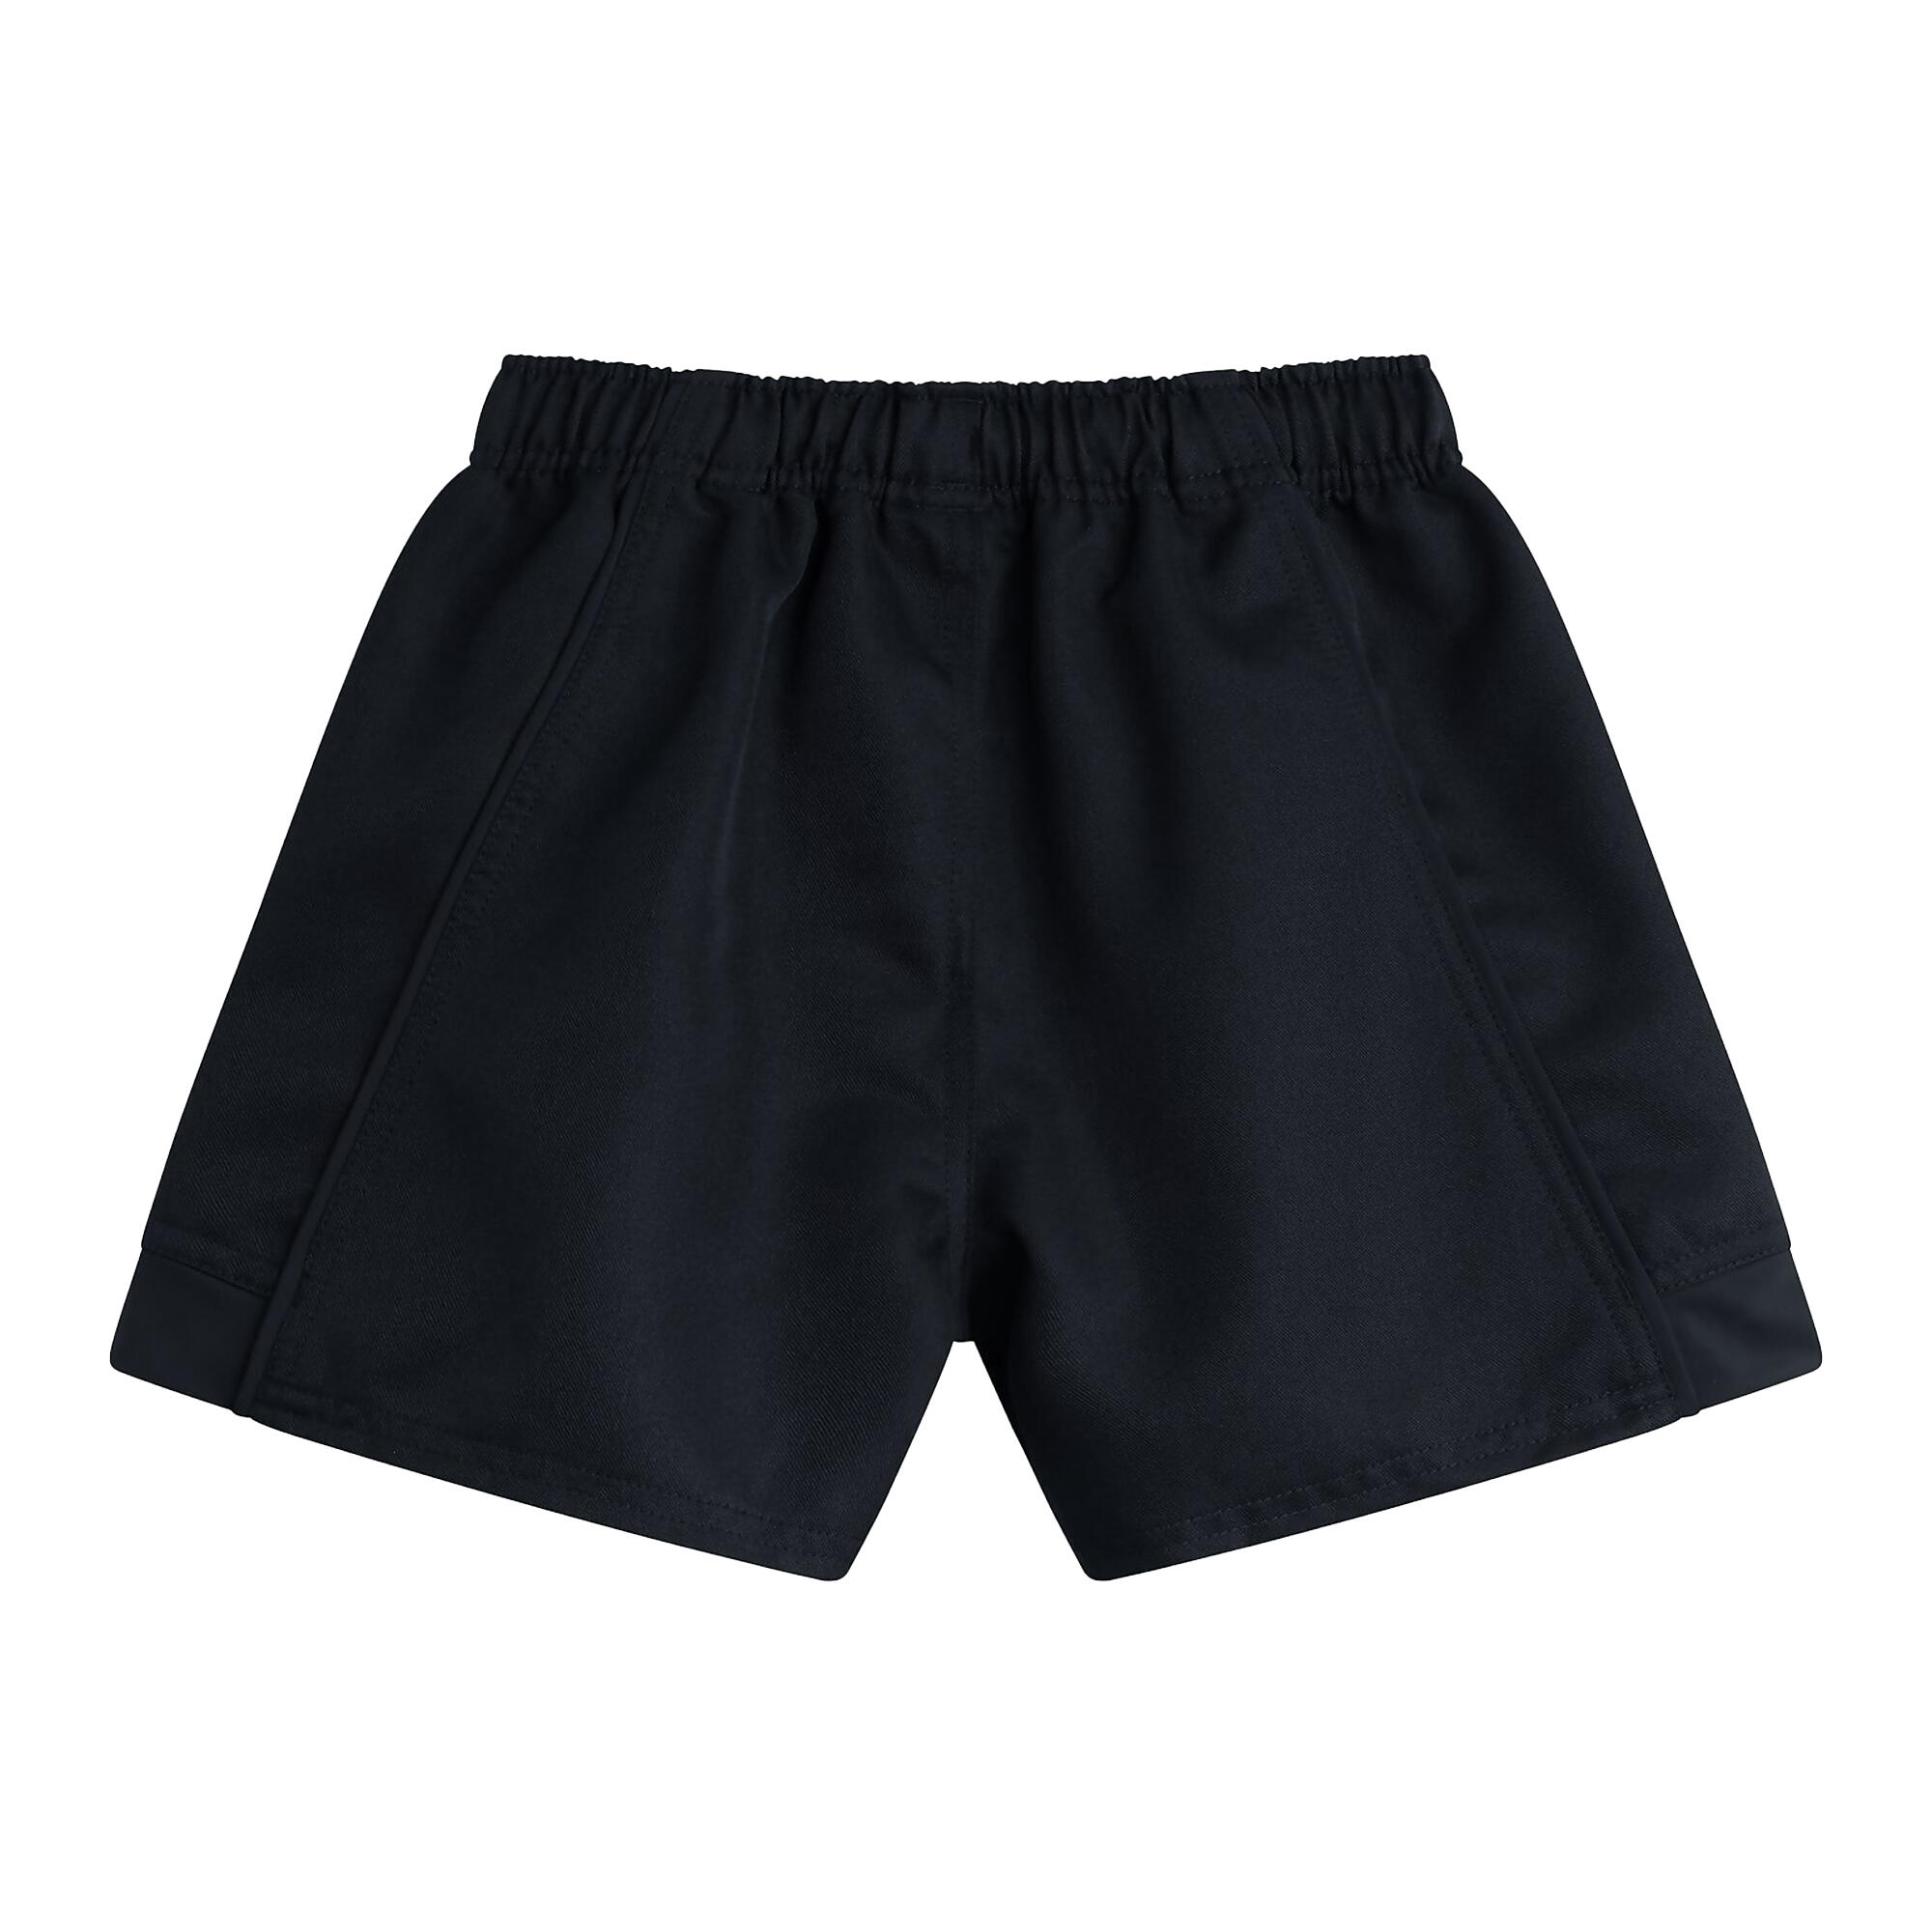 Childrens/Kids Advantage Shorts (Black) 3/4